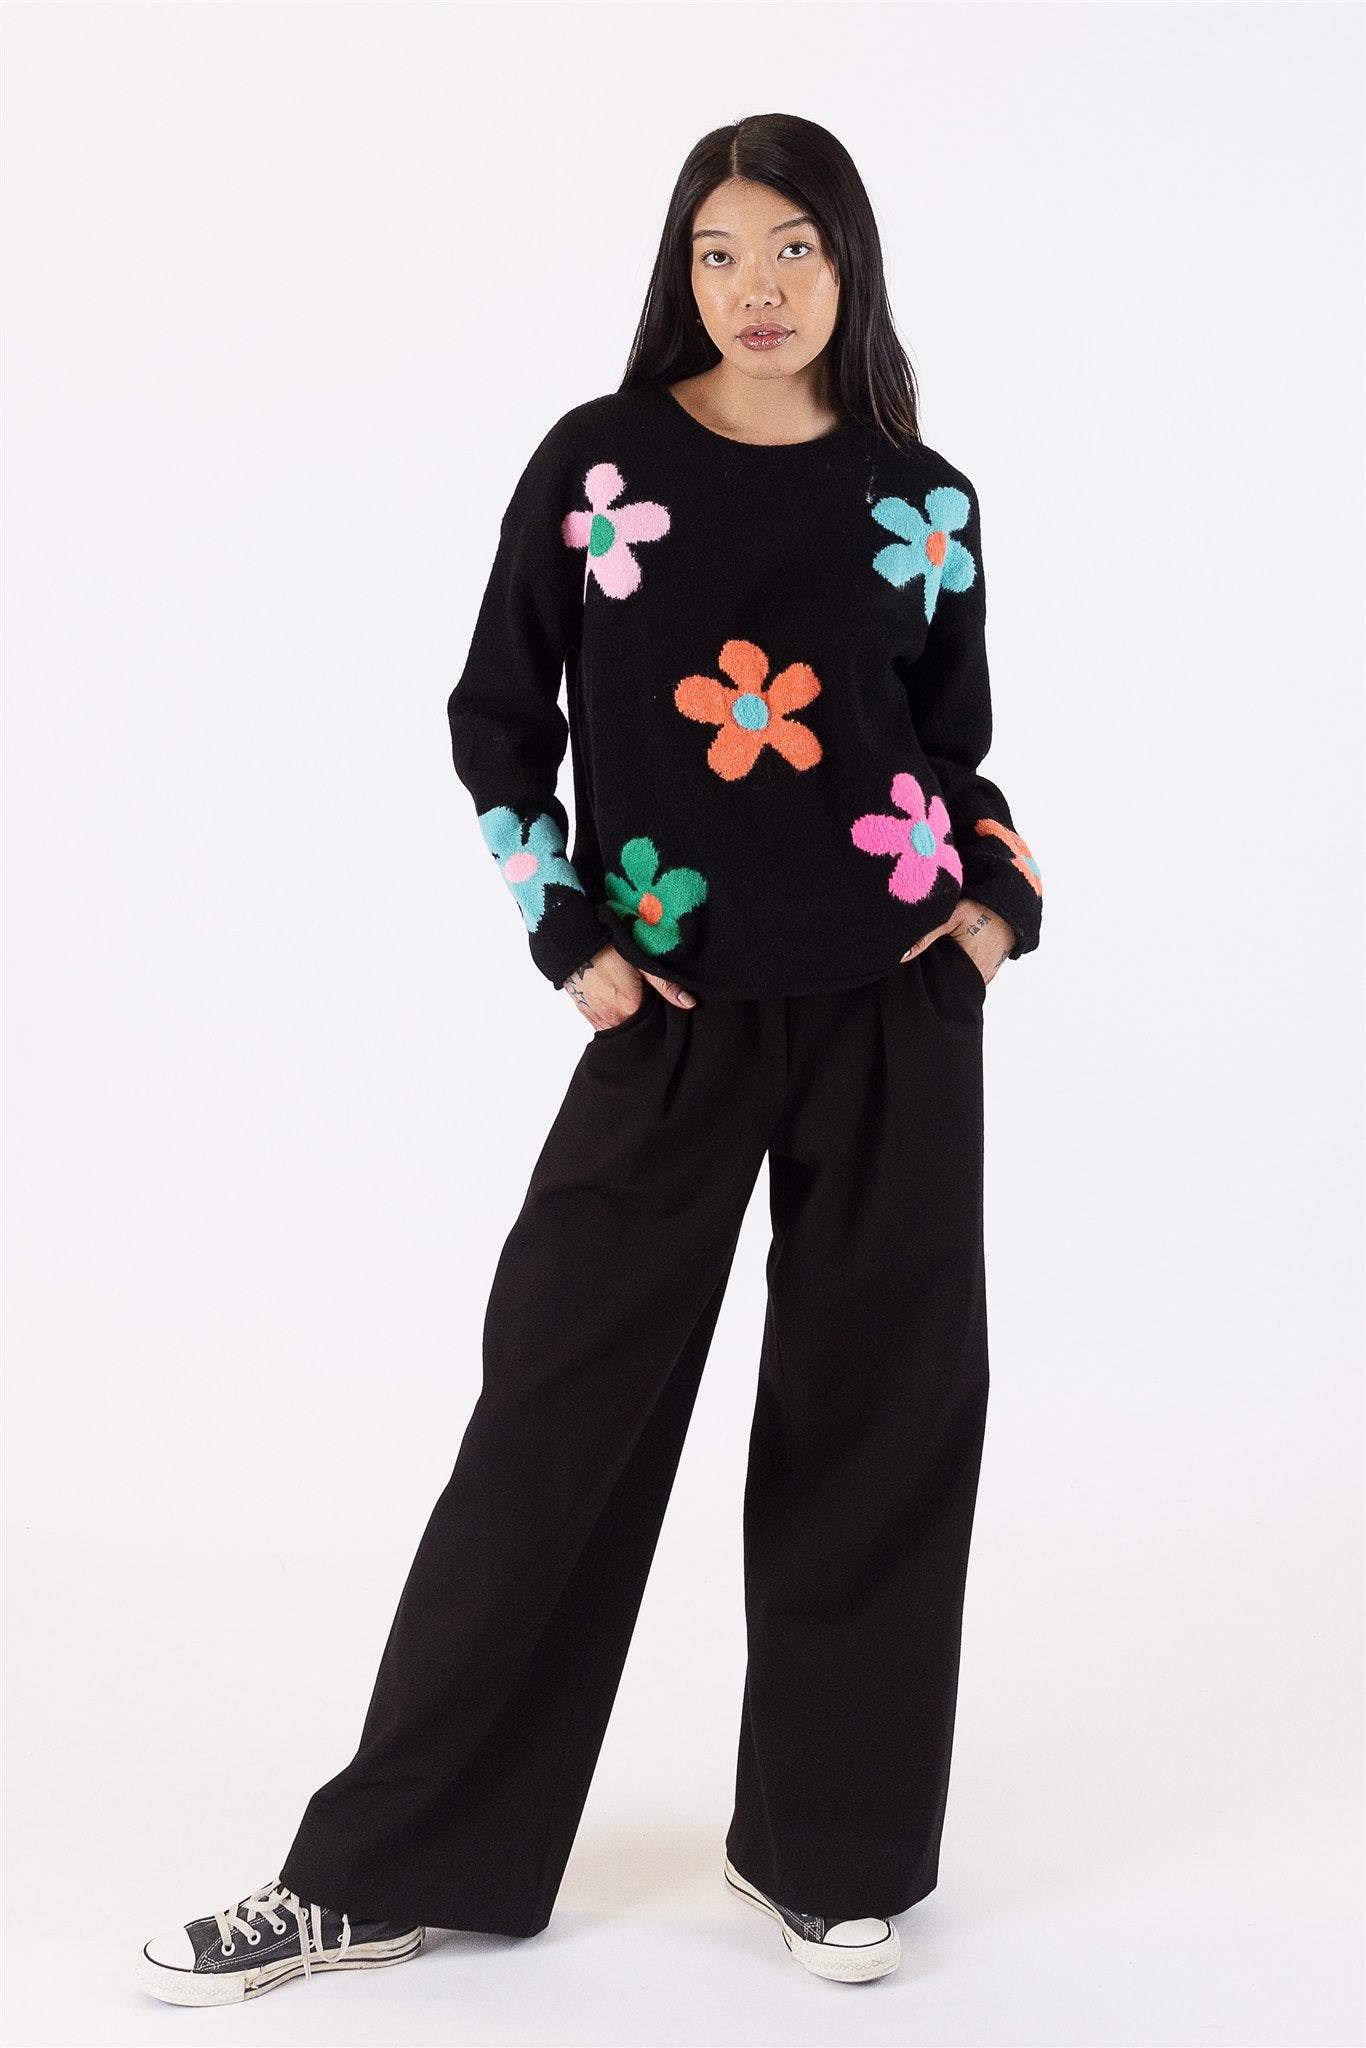 Lyla+Luxe Top - Flower Power Sweater - Black/Multi